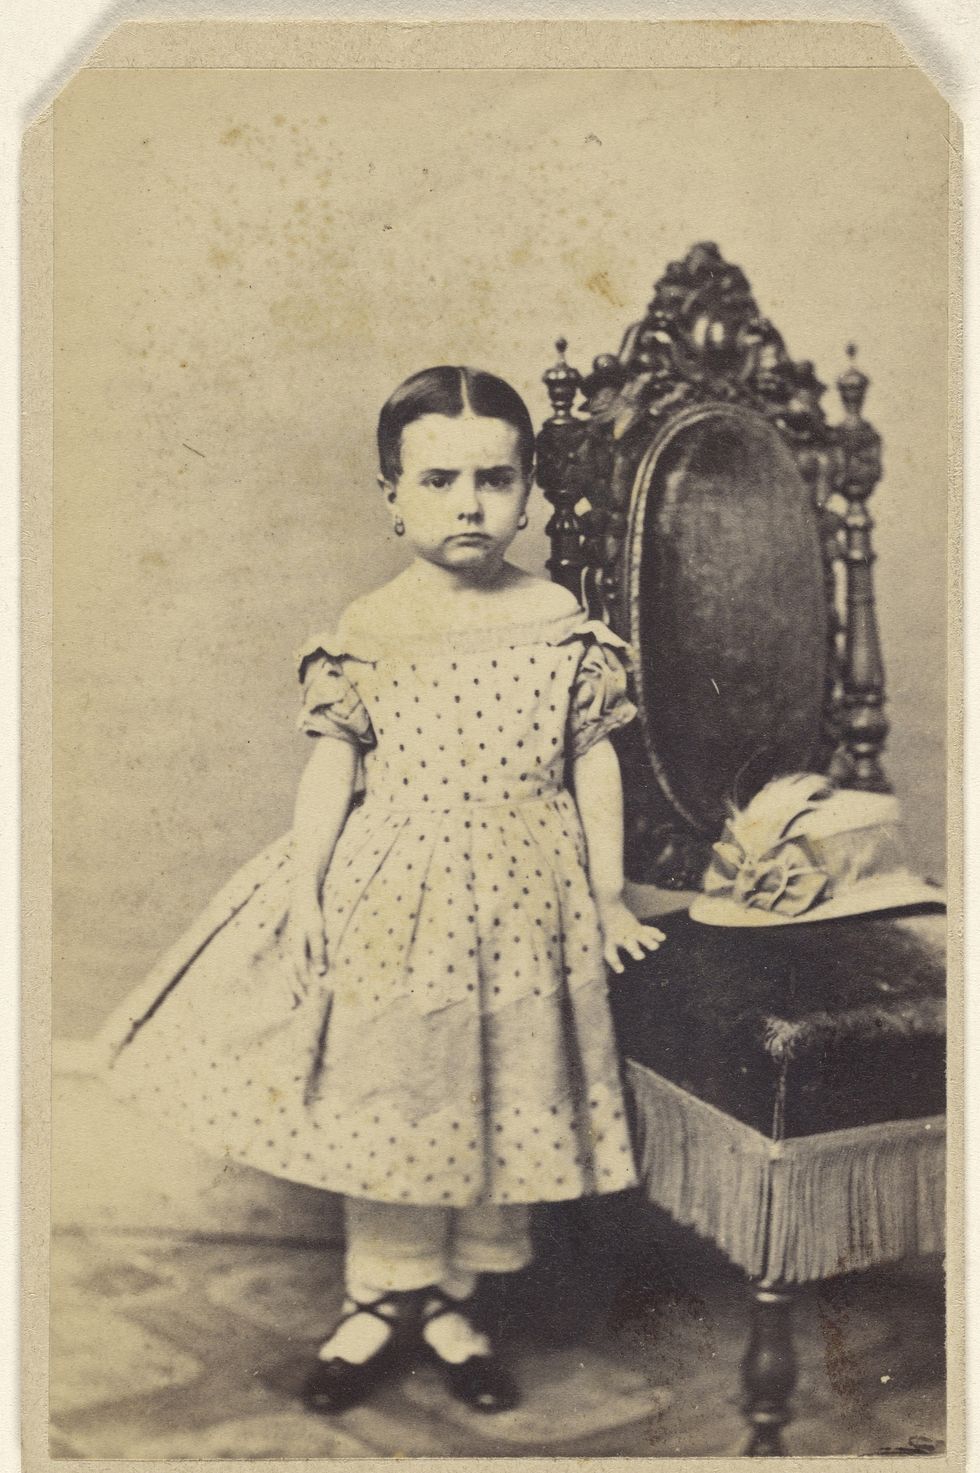 unidentified little girl wearing a polka dot dress